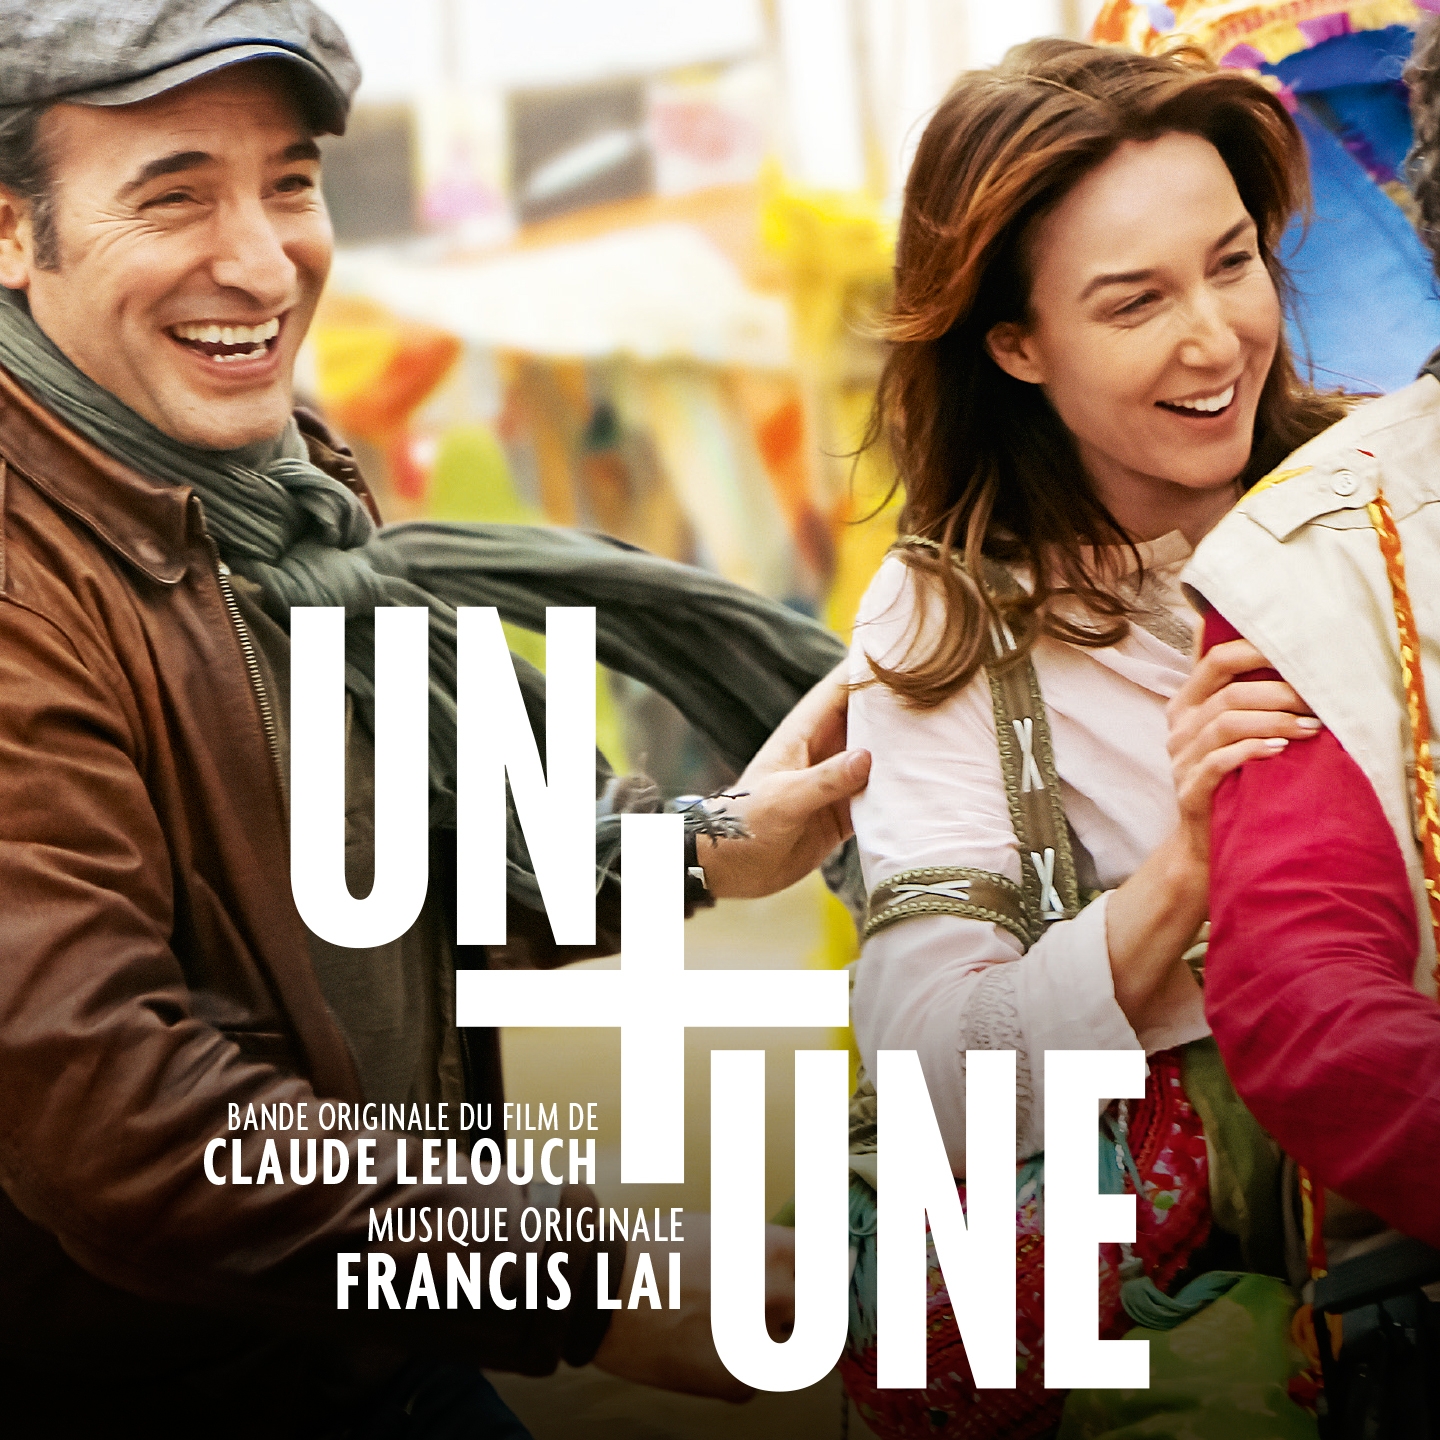 Un + Une (Soundtrack of Claude Lelouch's Film)